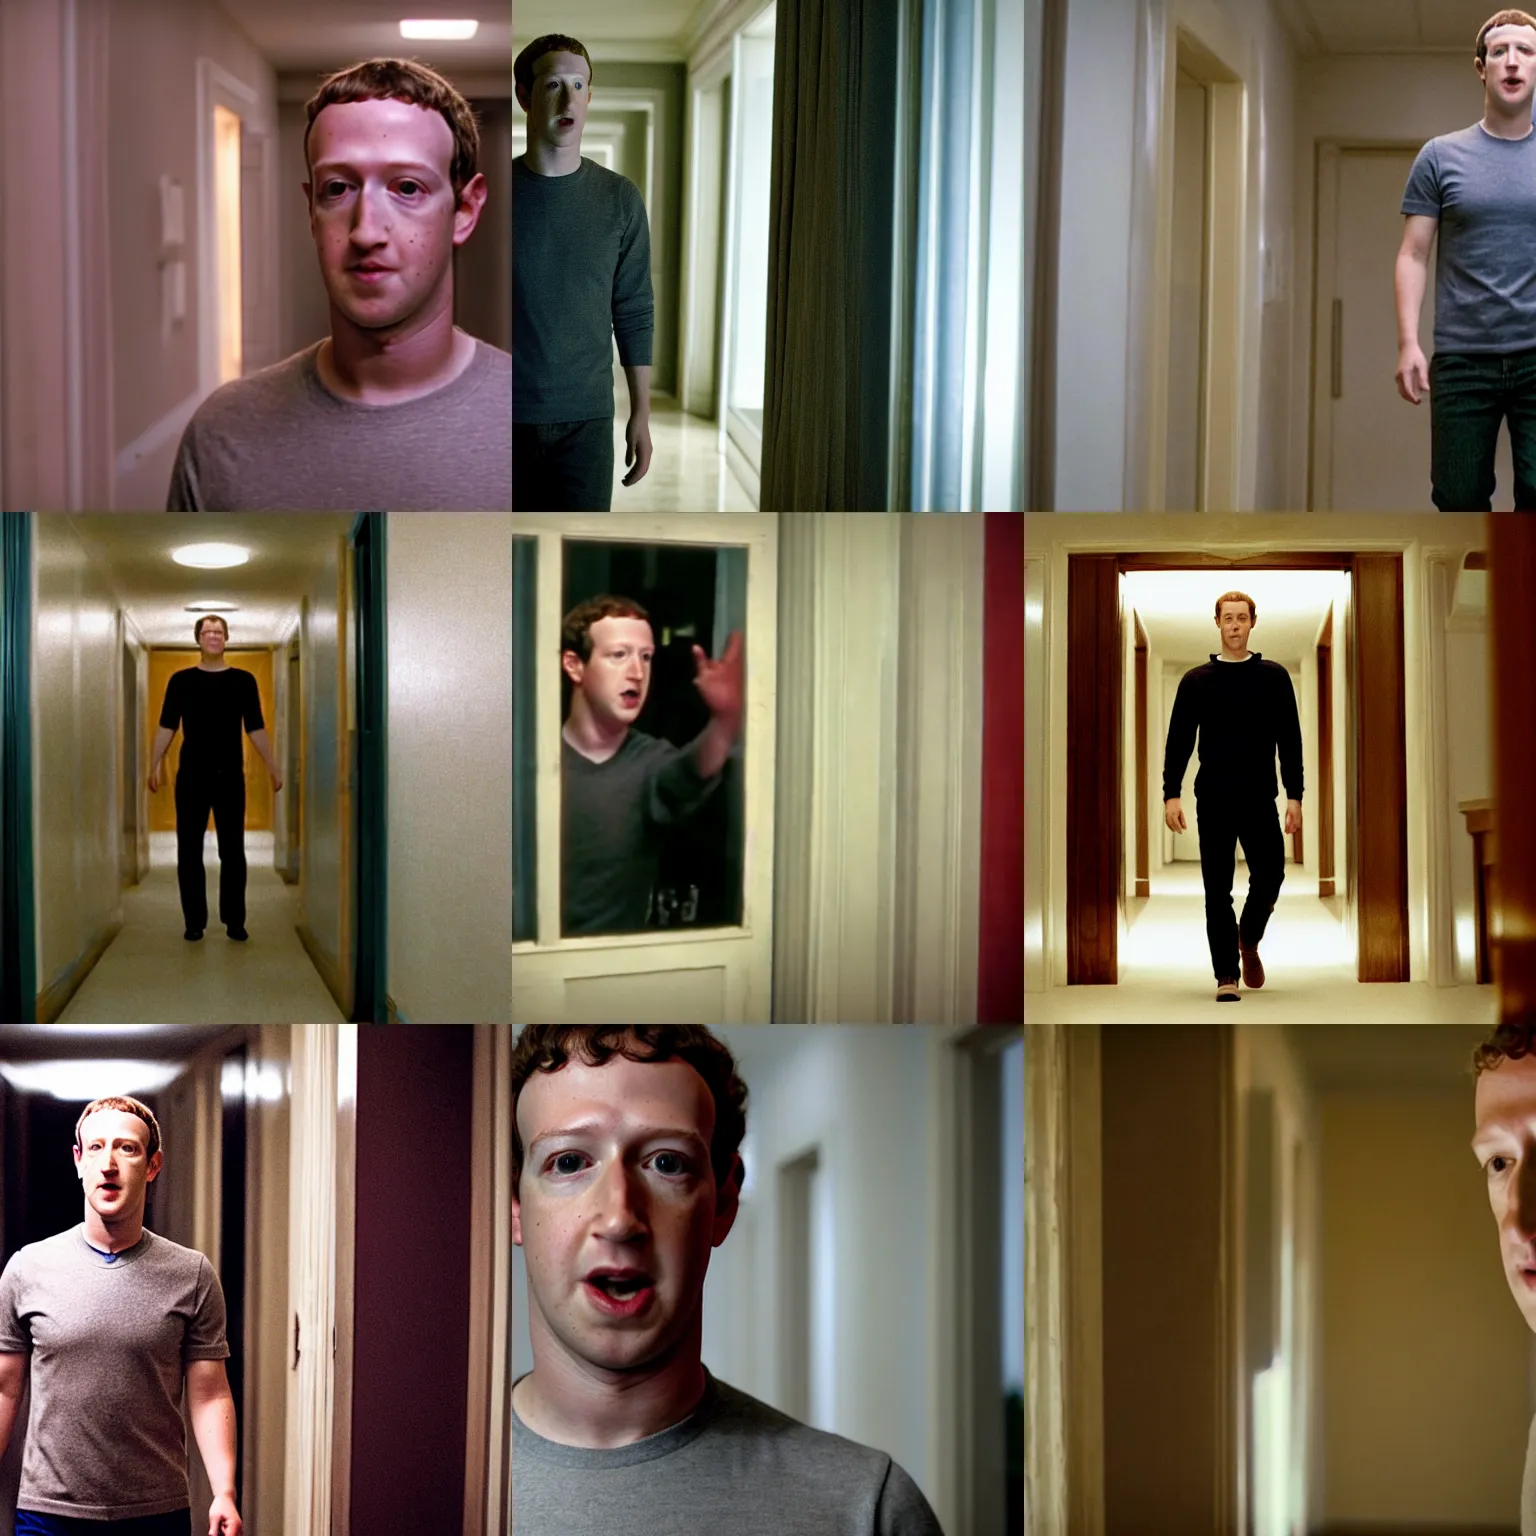 Prompt: Movie still of Mark Zuckerberg in The Shining